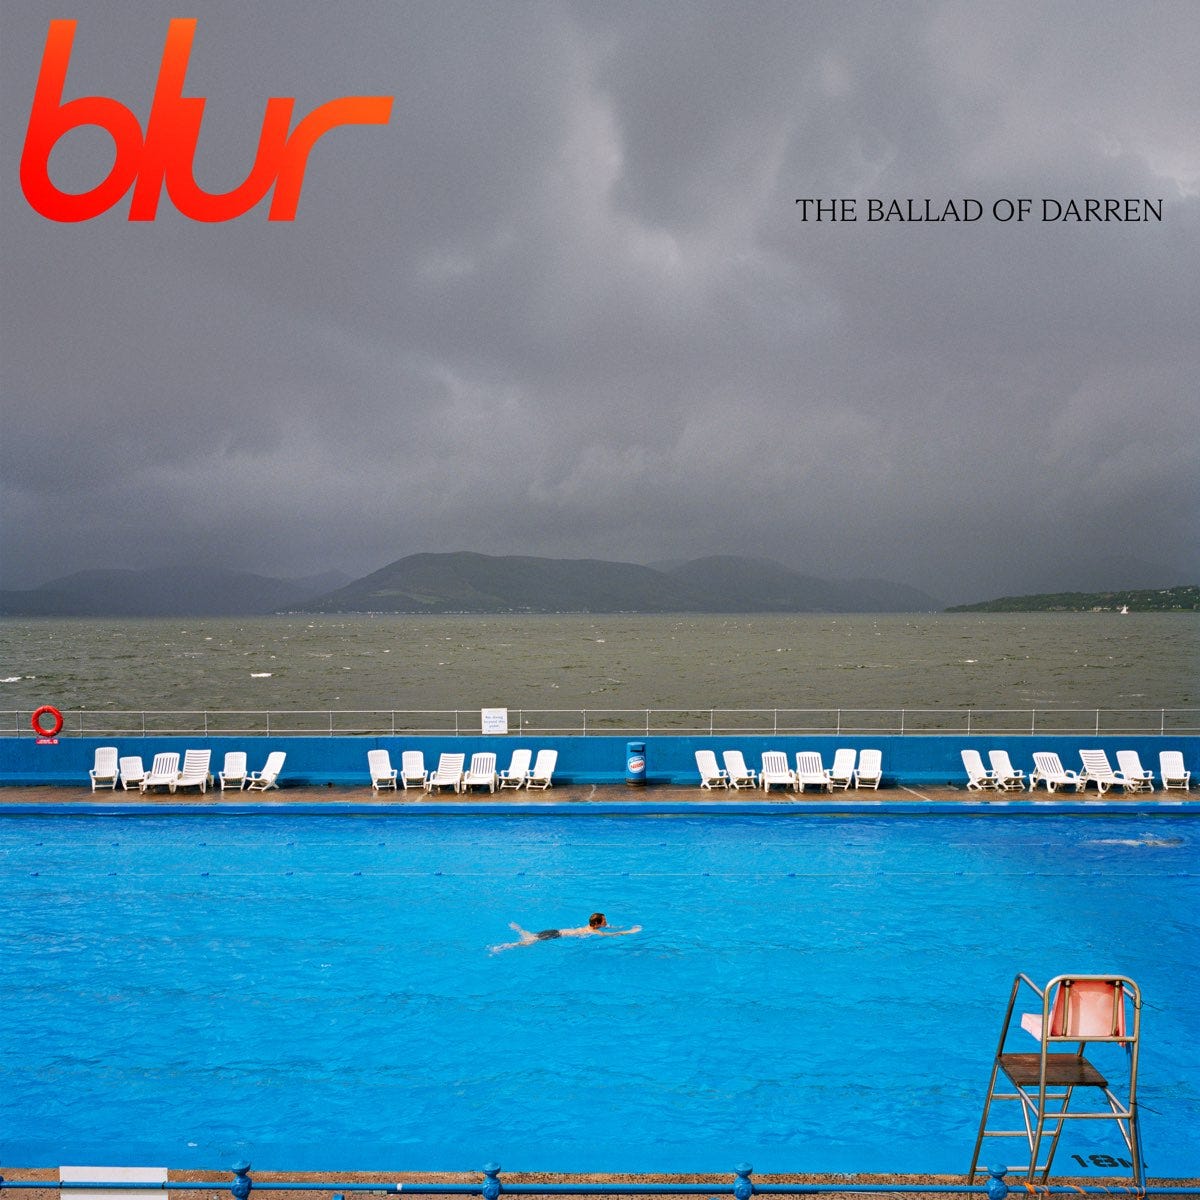 The Ballad Of Darren - Album by Blur - Apple Music